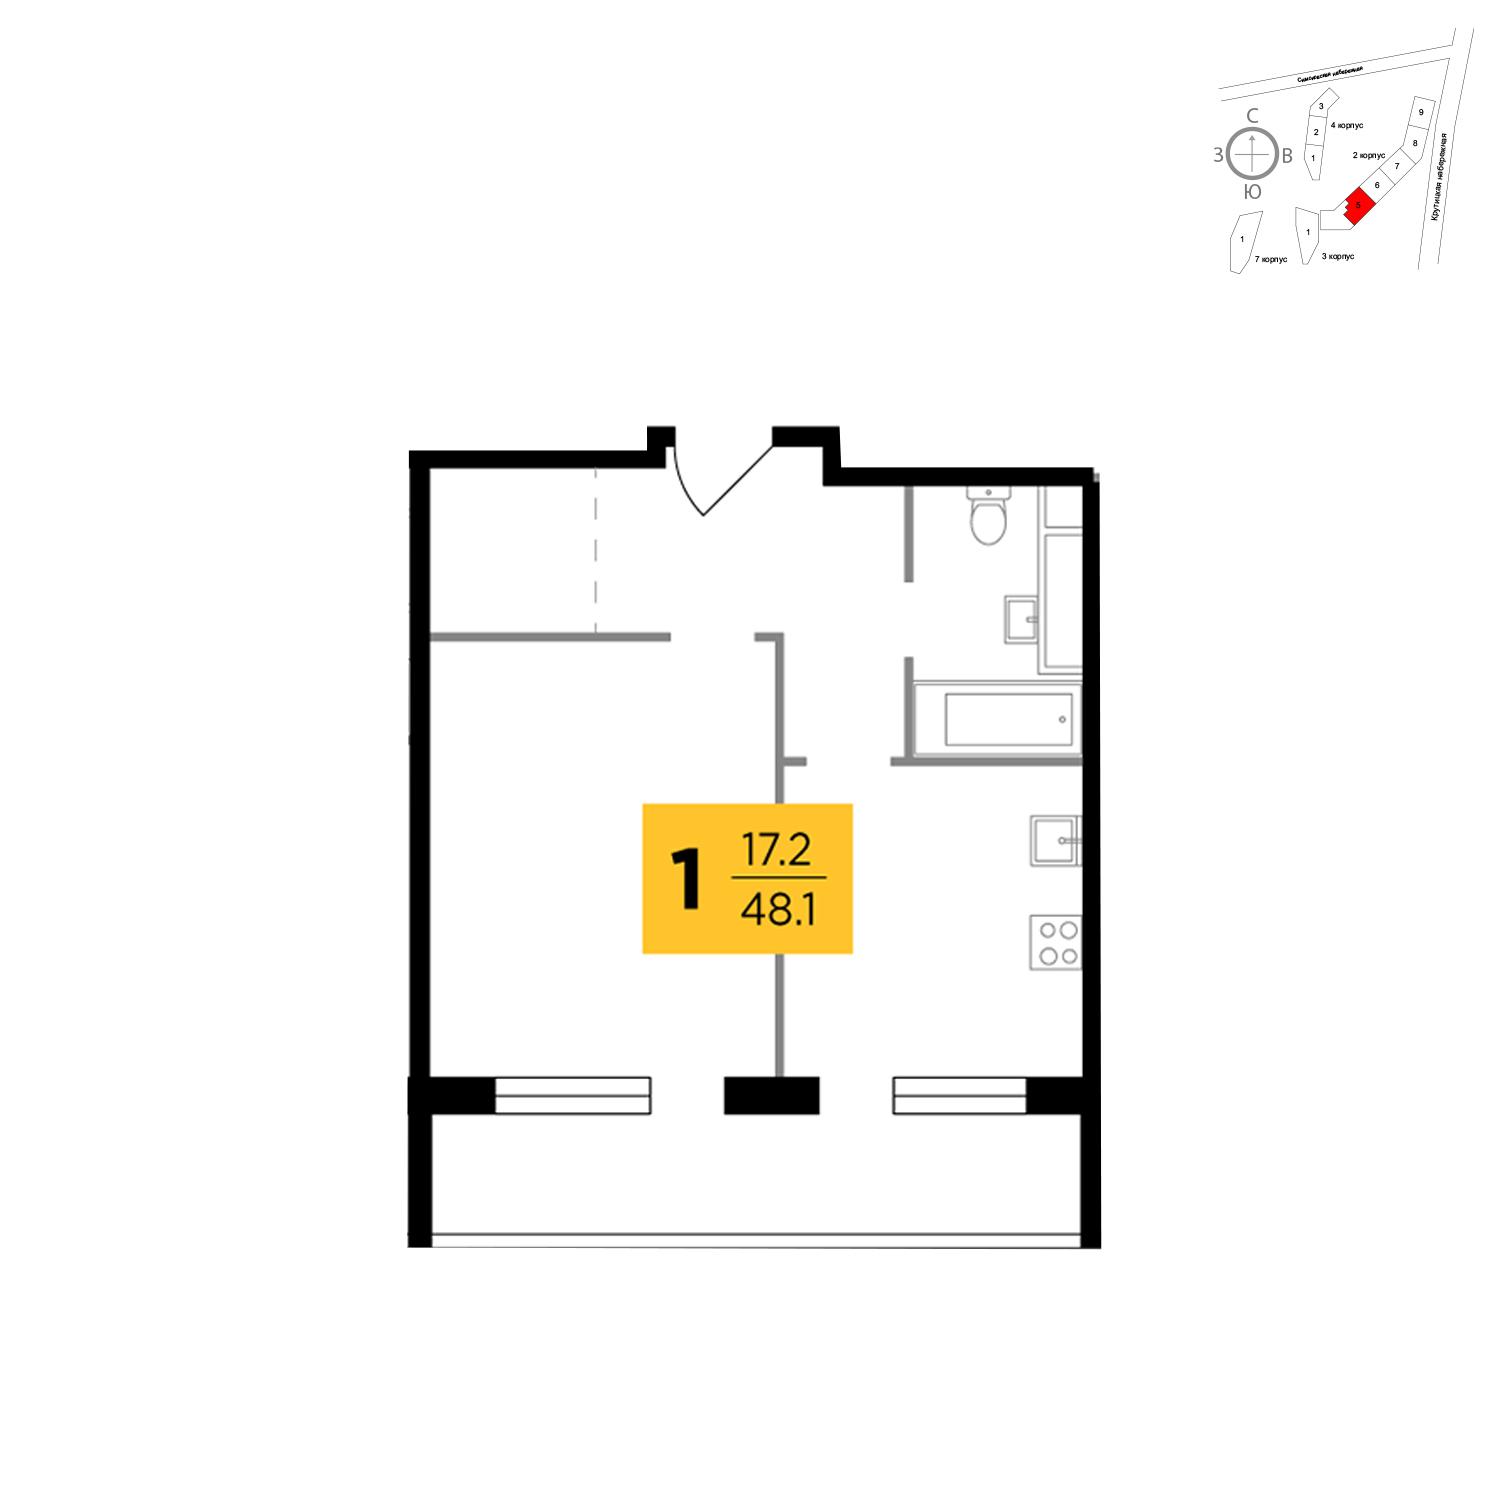 Продаётся 1-комнатная квартира в новостройке 48.8 кв.м. этаж 6/17 за 13 272 472 руб 